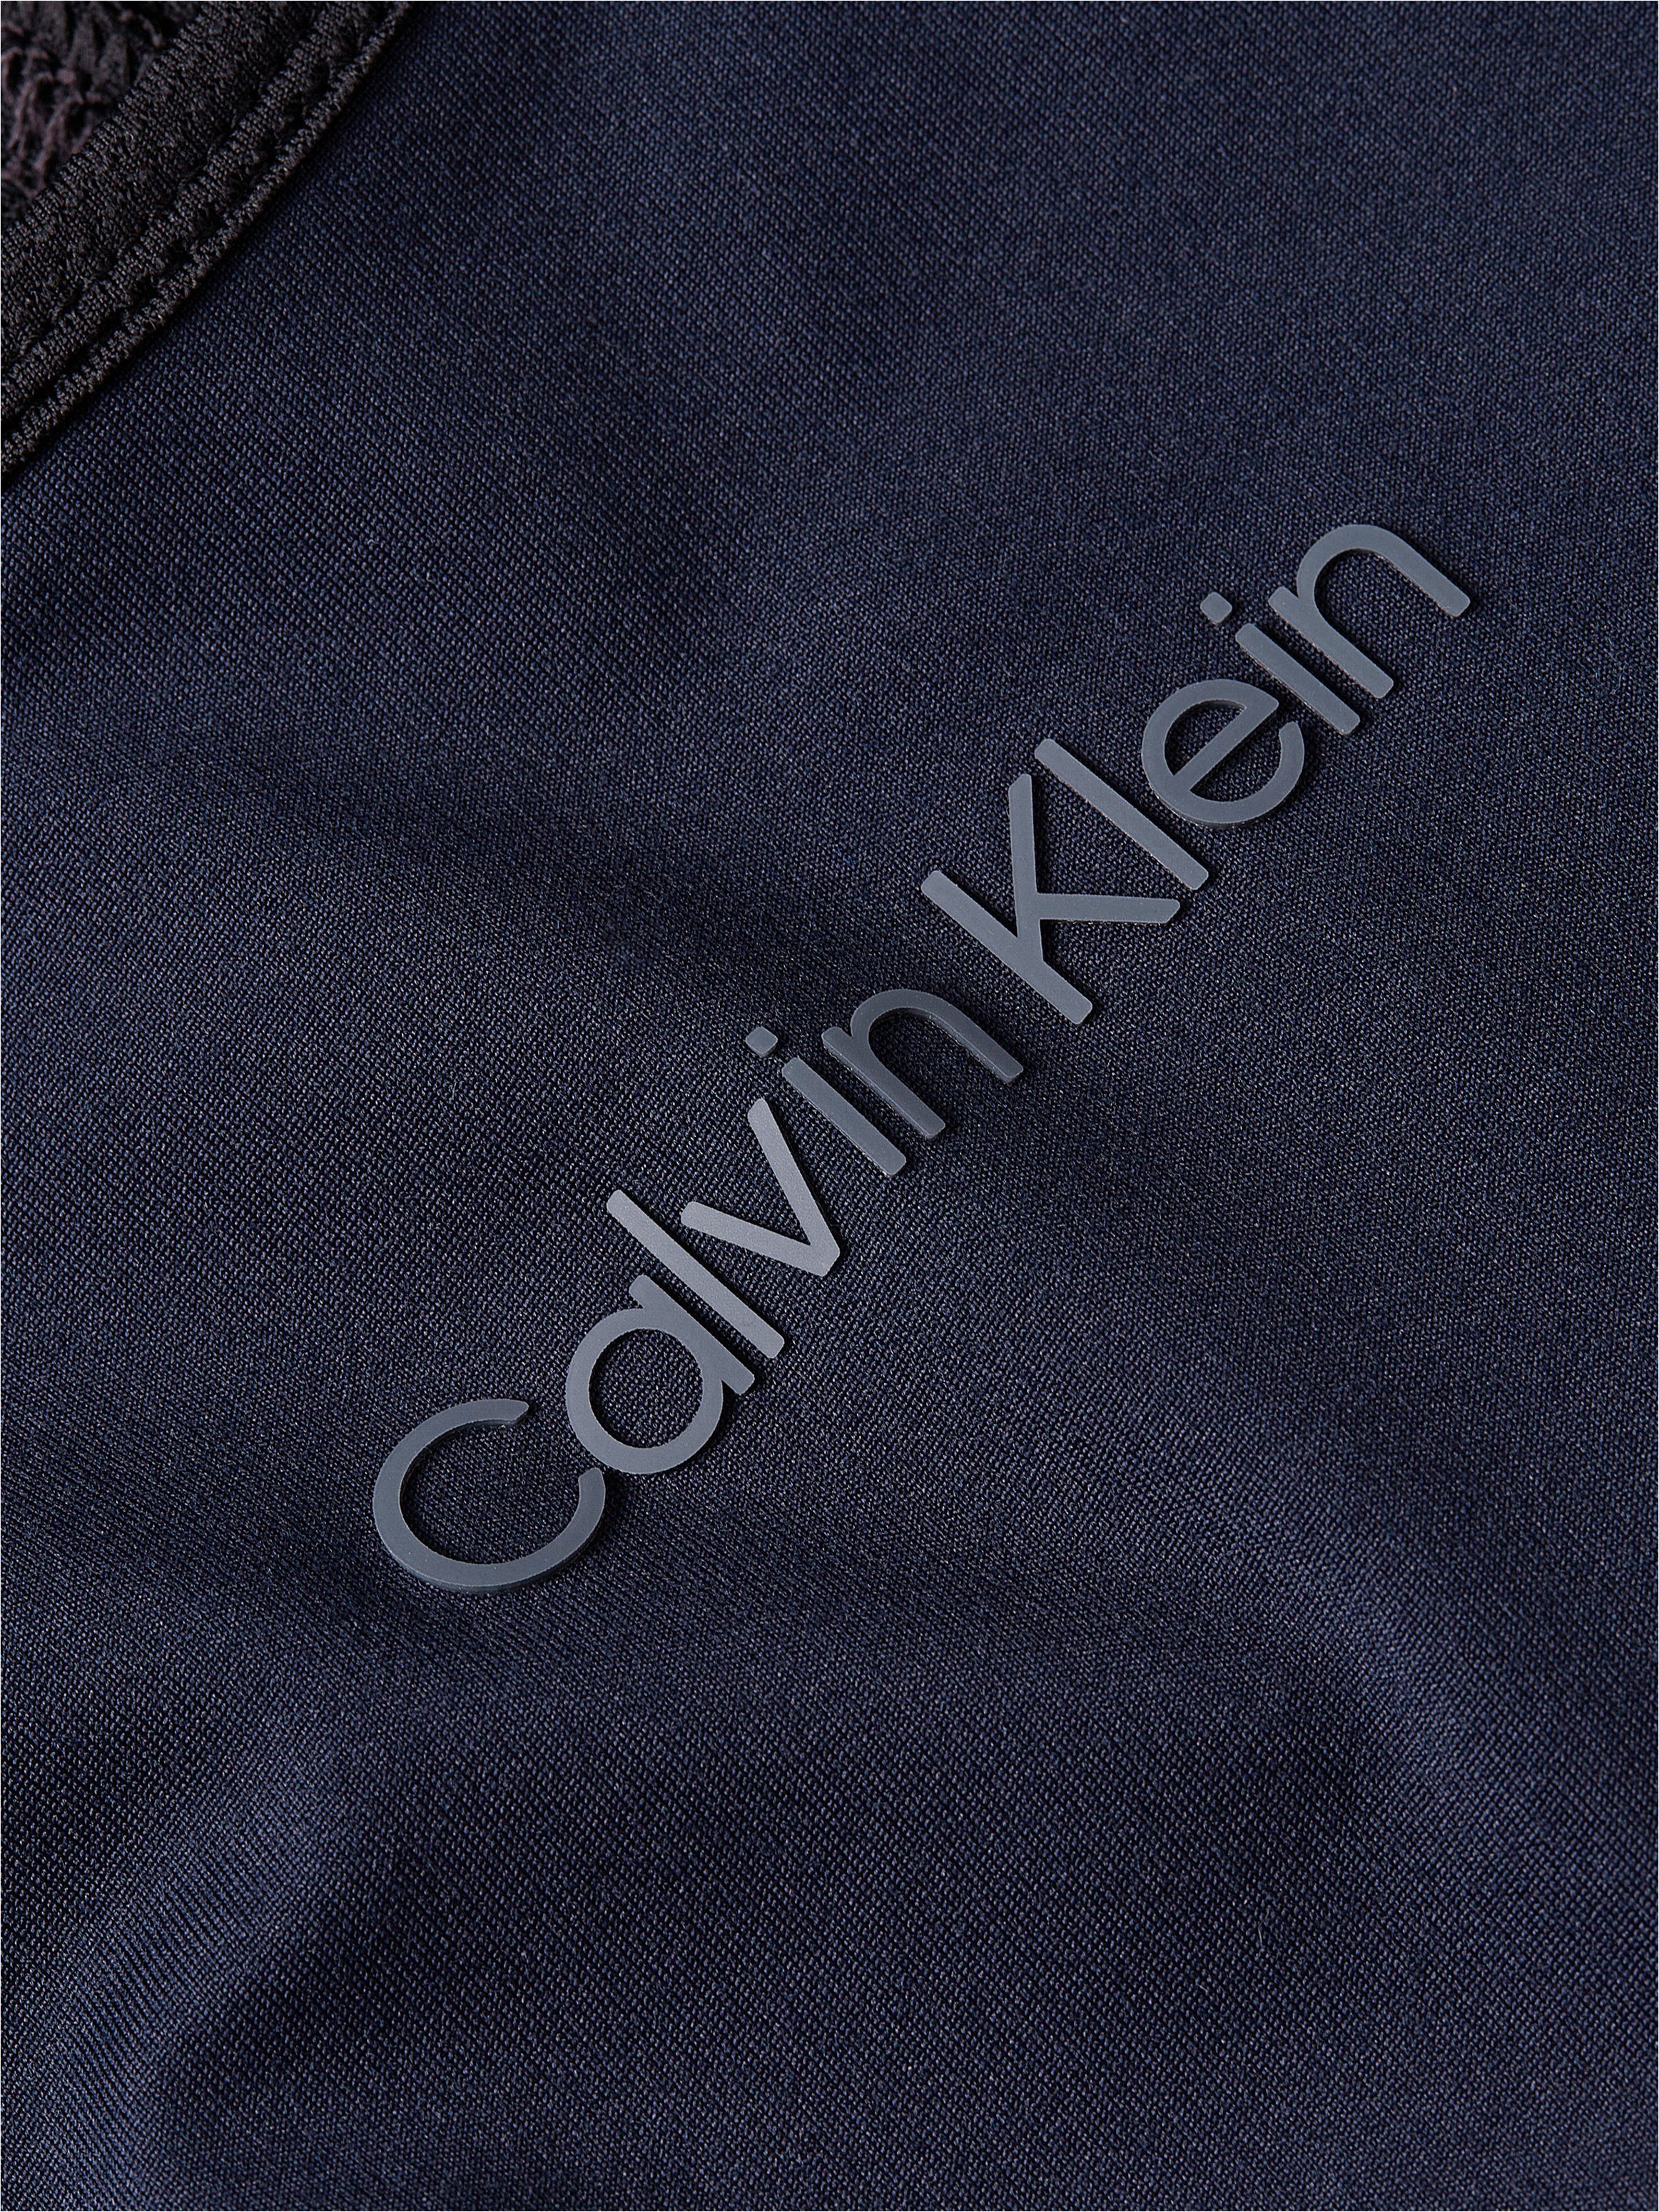 Beauty Calvin Klein Black T-Shirt Sport